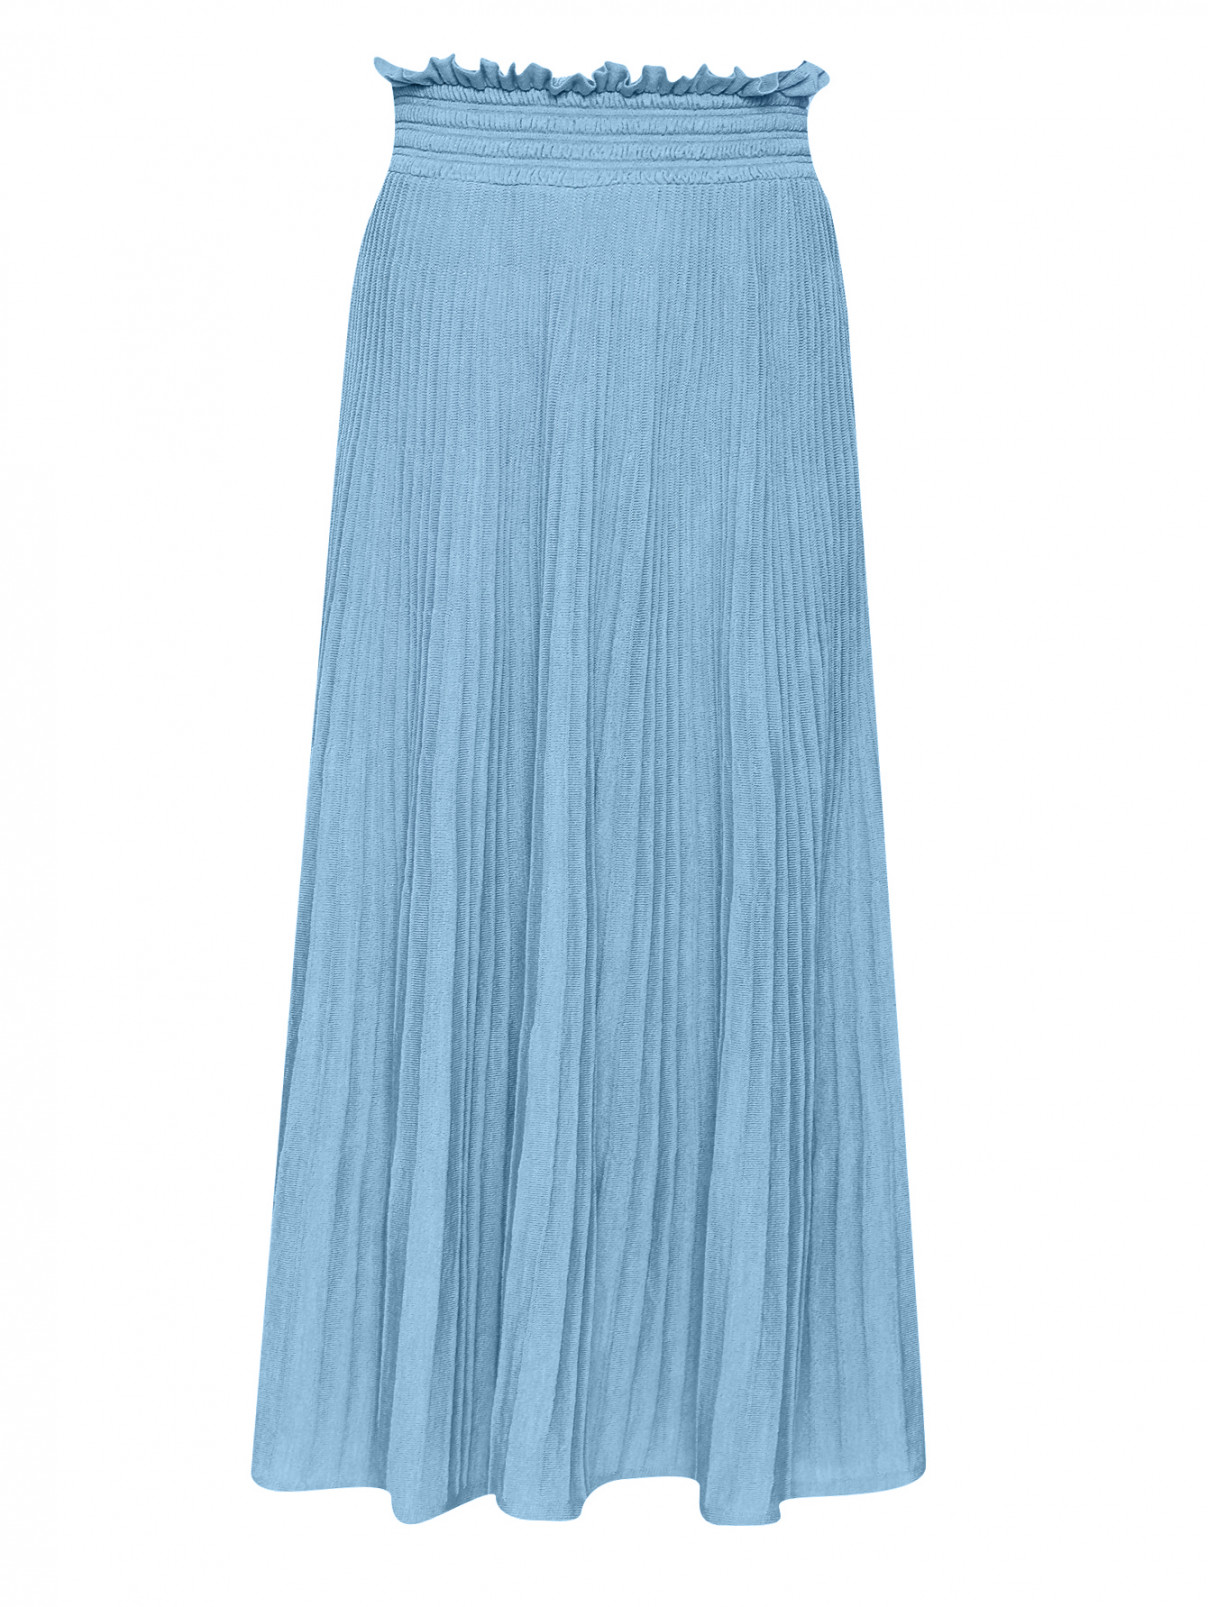 Трикотажная юбка на резинке Moschino Boutique  –  Общий вид  – Цвет:  Синий